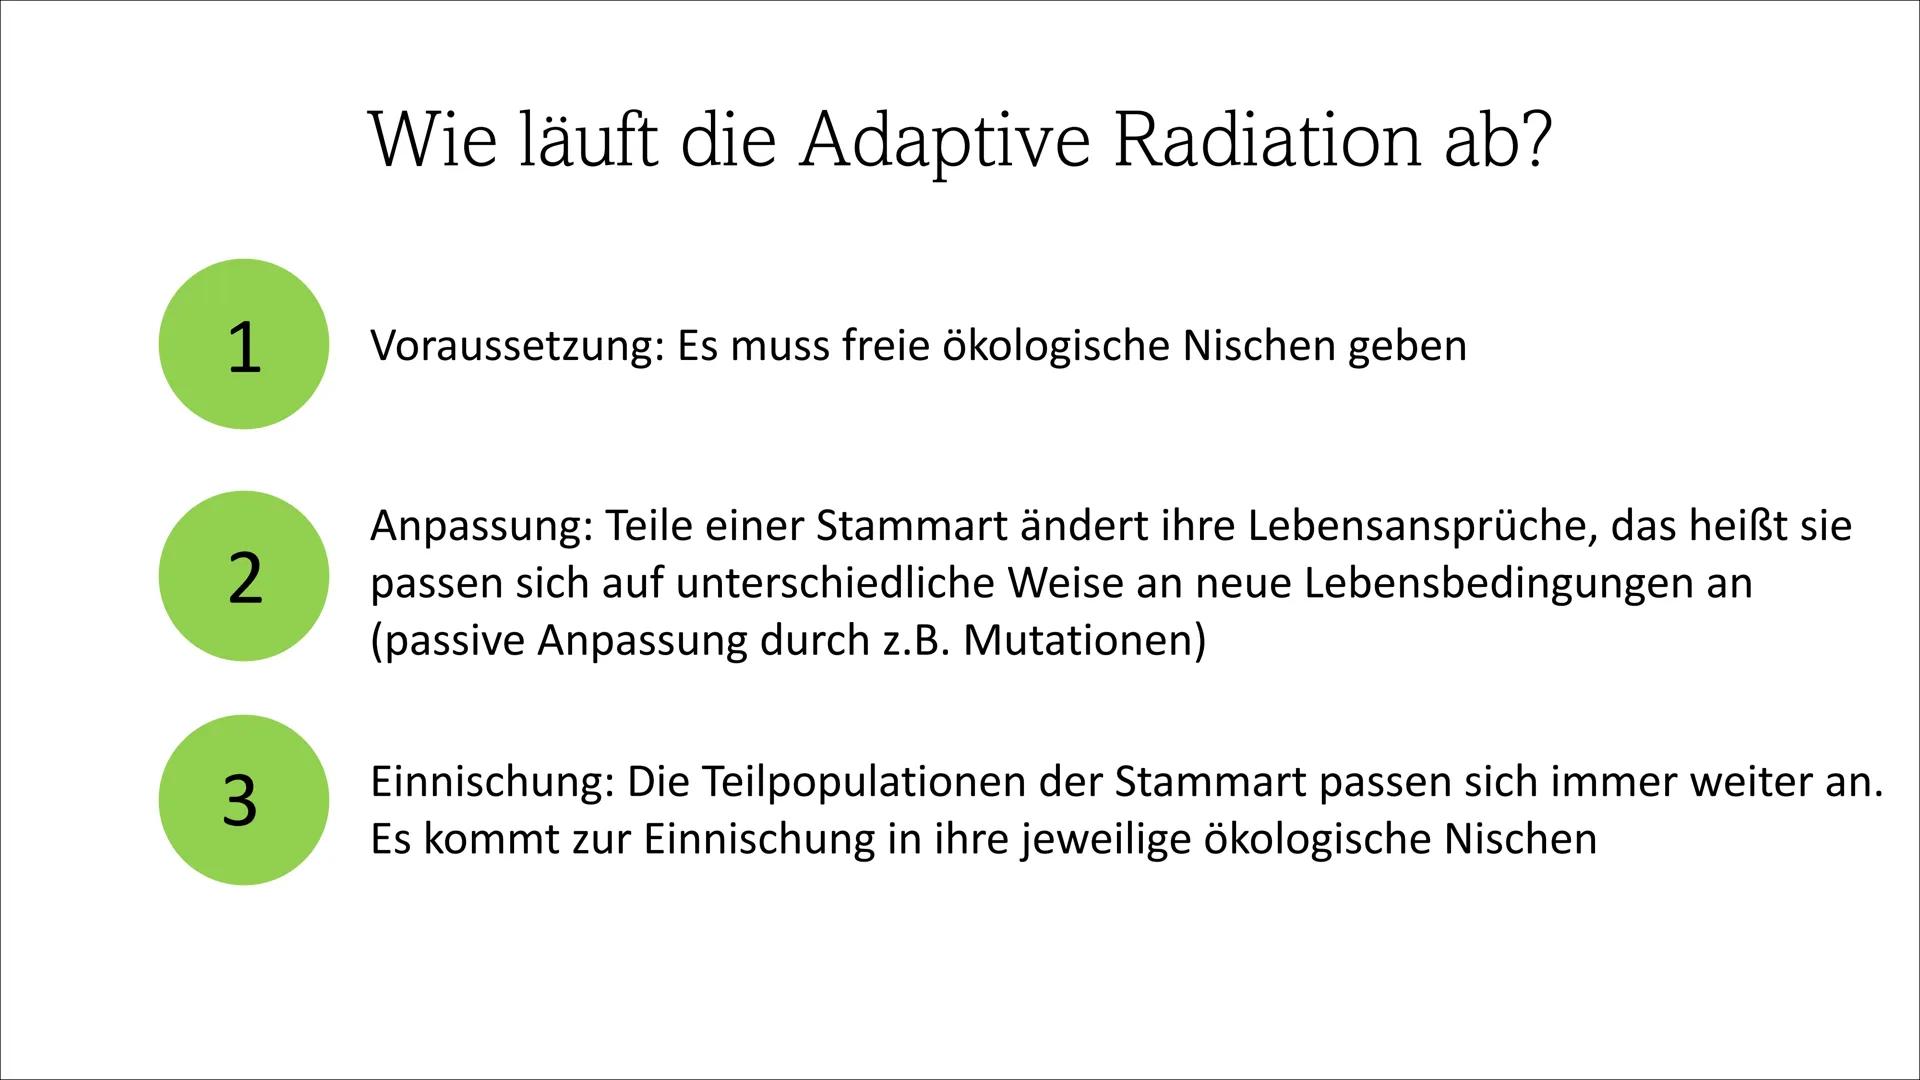 Adaptive Radiation ●
●
Inhaltsverzeichnis
Definition
Wie läuft die Adaptive Radiation ab?
Beispiel: Darwin Finken
Quellen Definition
Adaptio